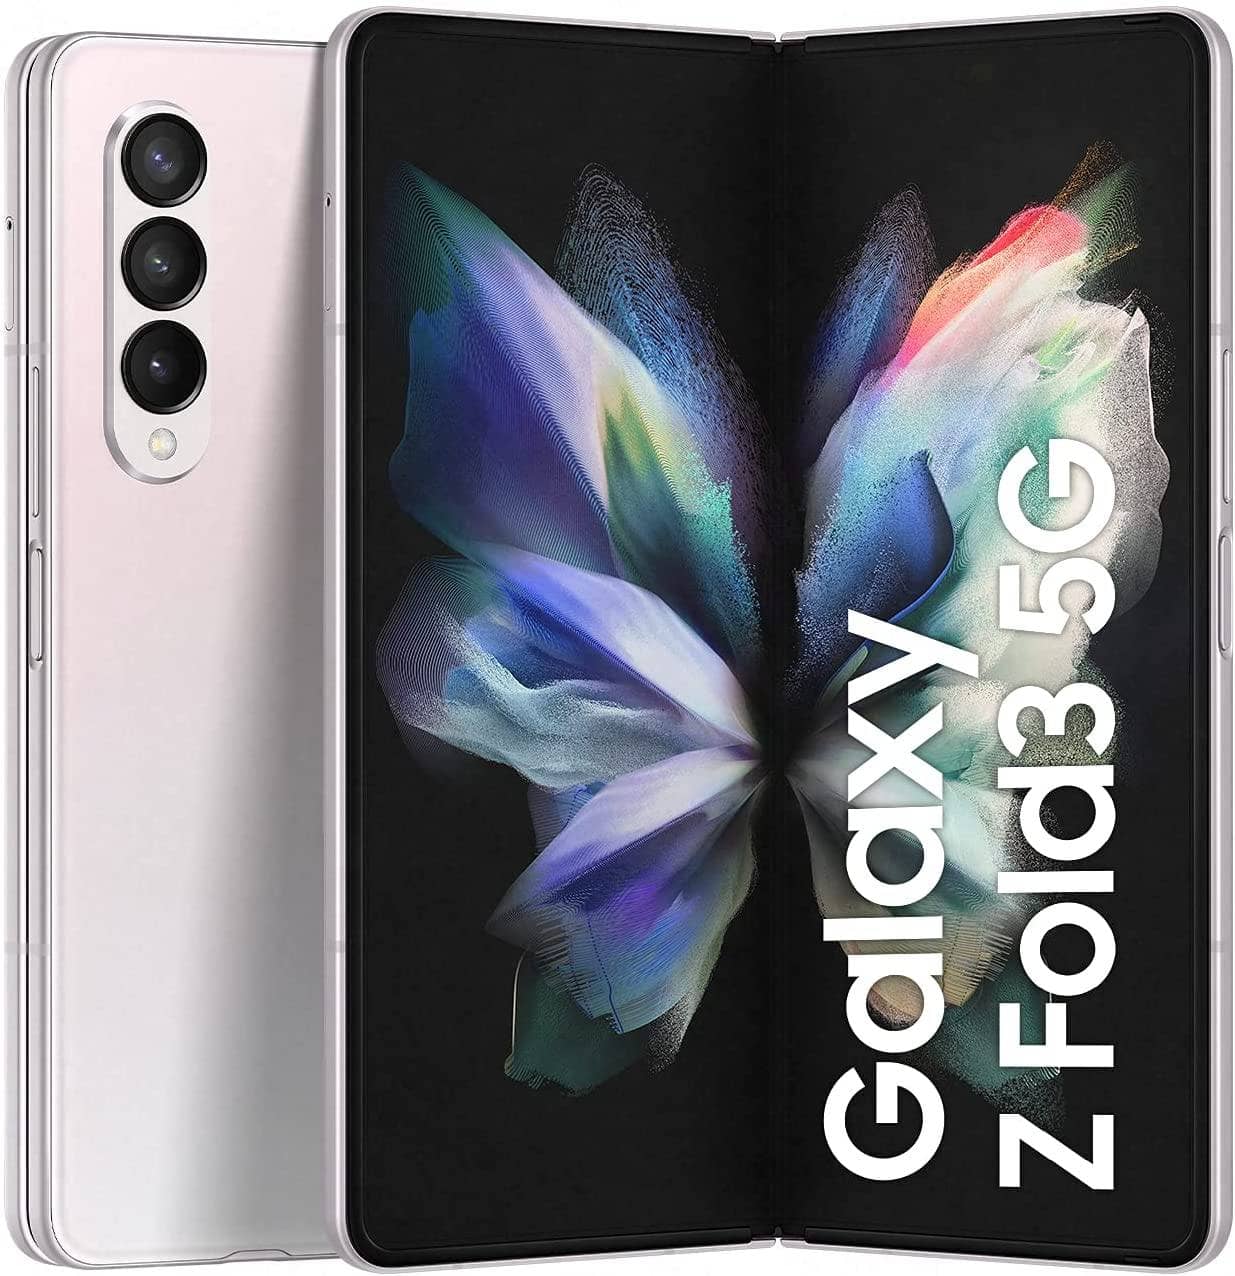 SAMSUNG Galaxy Z Fold 3 5G Dual SIM and eSIM Smartphone - International version + 2 Years Warranty Included - DealYaSteal